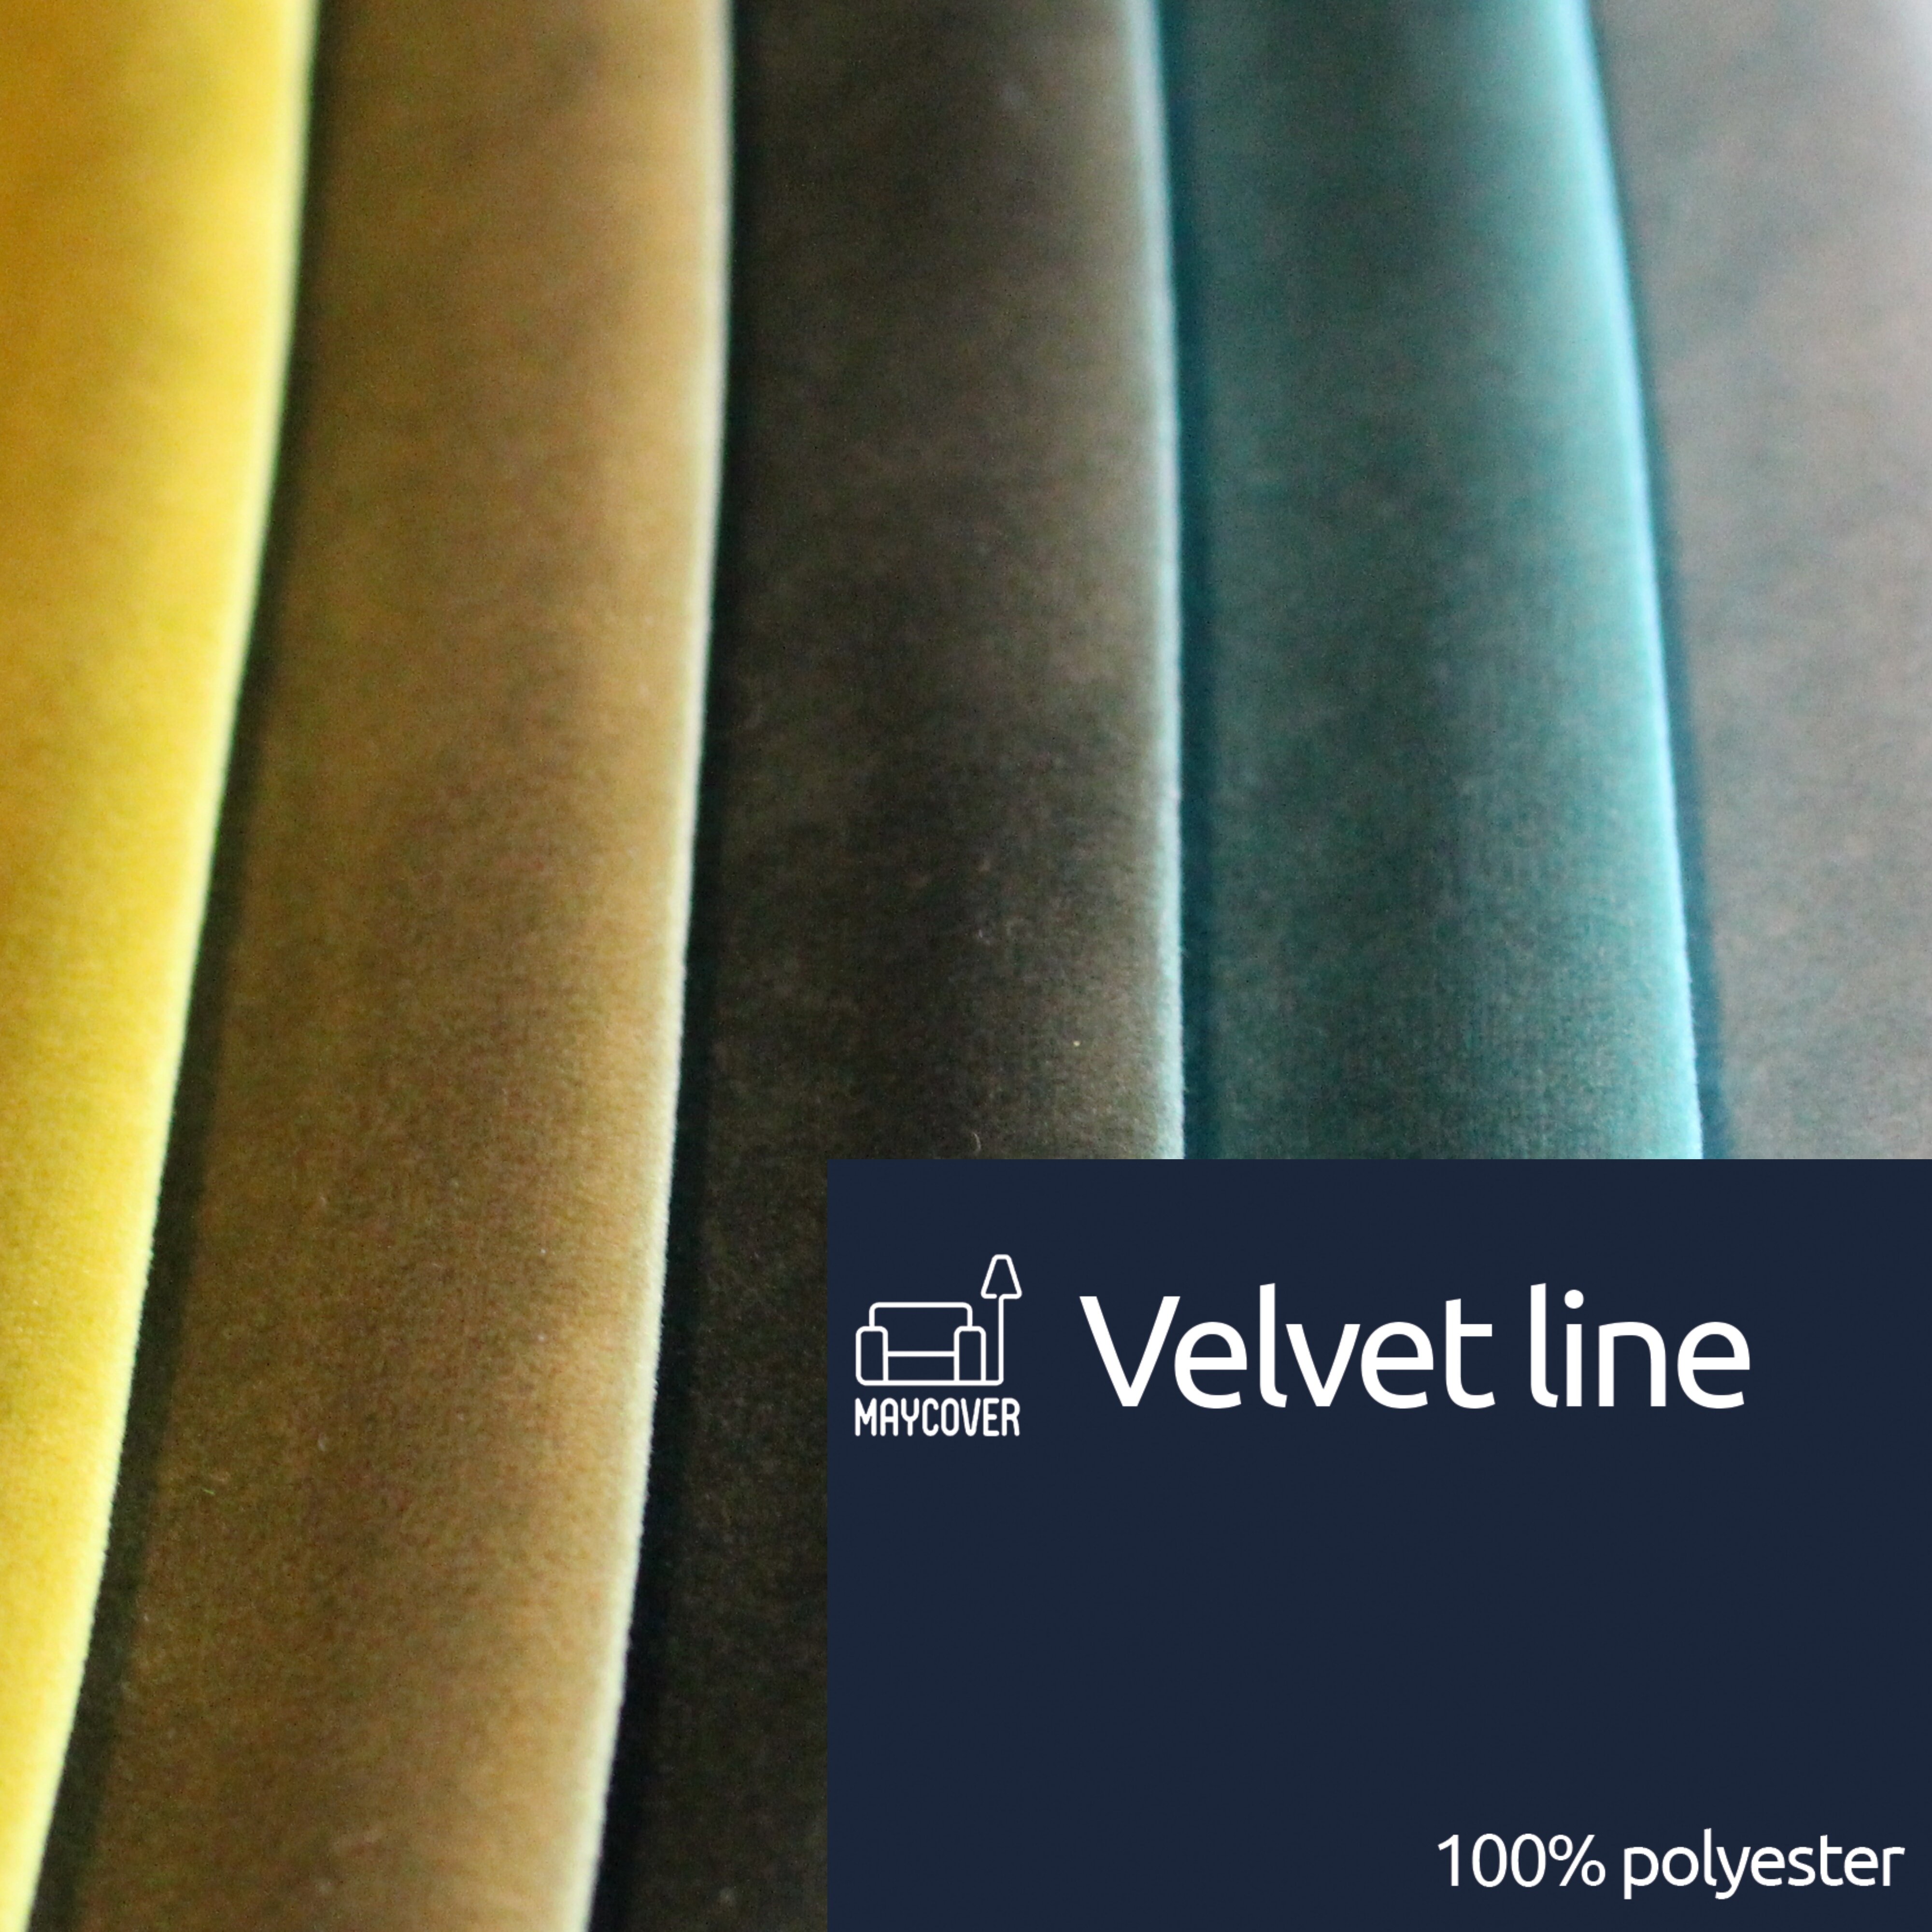 Velvet line